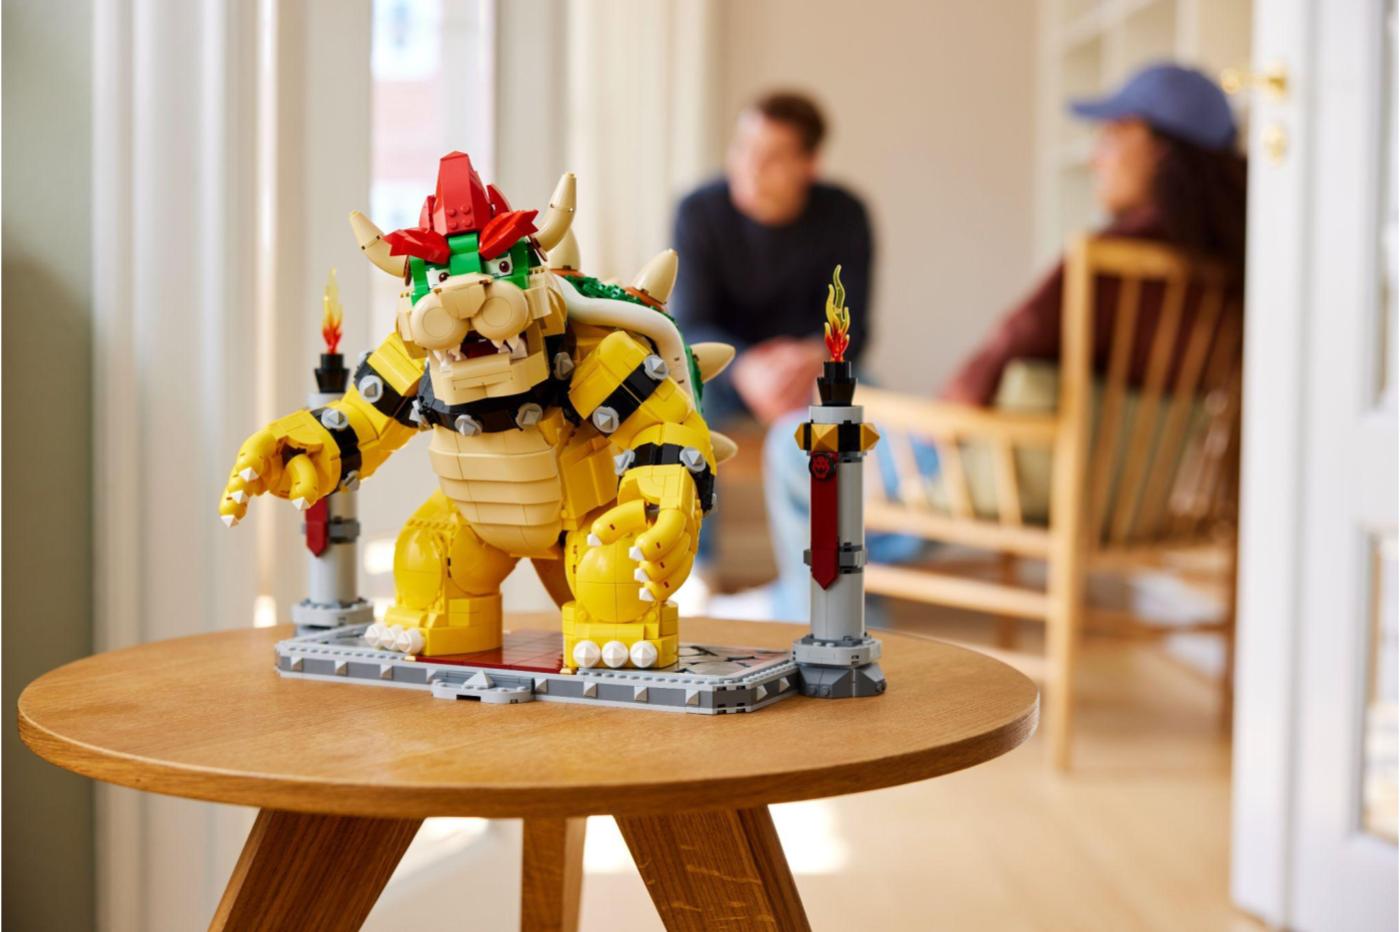 Tremblez, le LEGO Le Puissant Bowser fait même peur à son prix grâce à  cette promotion pendant les soldes d'hiver… 